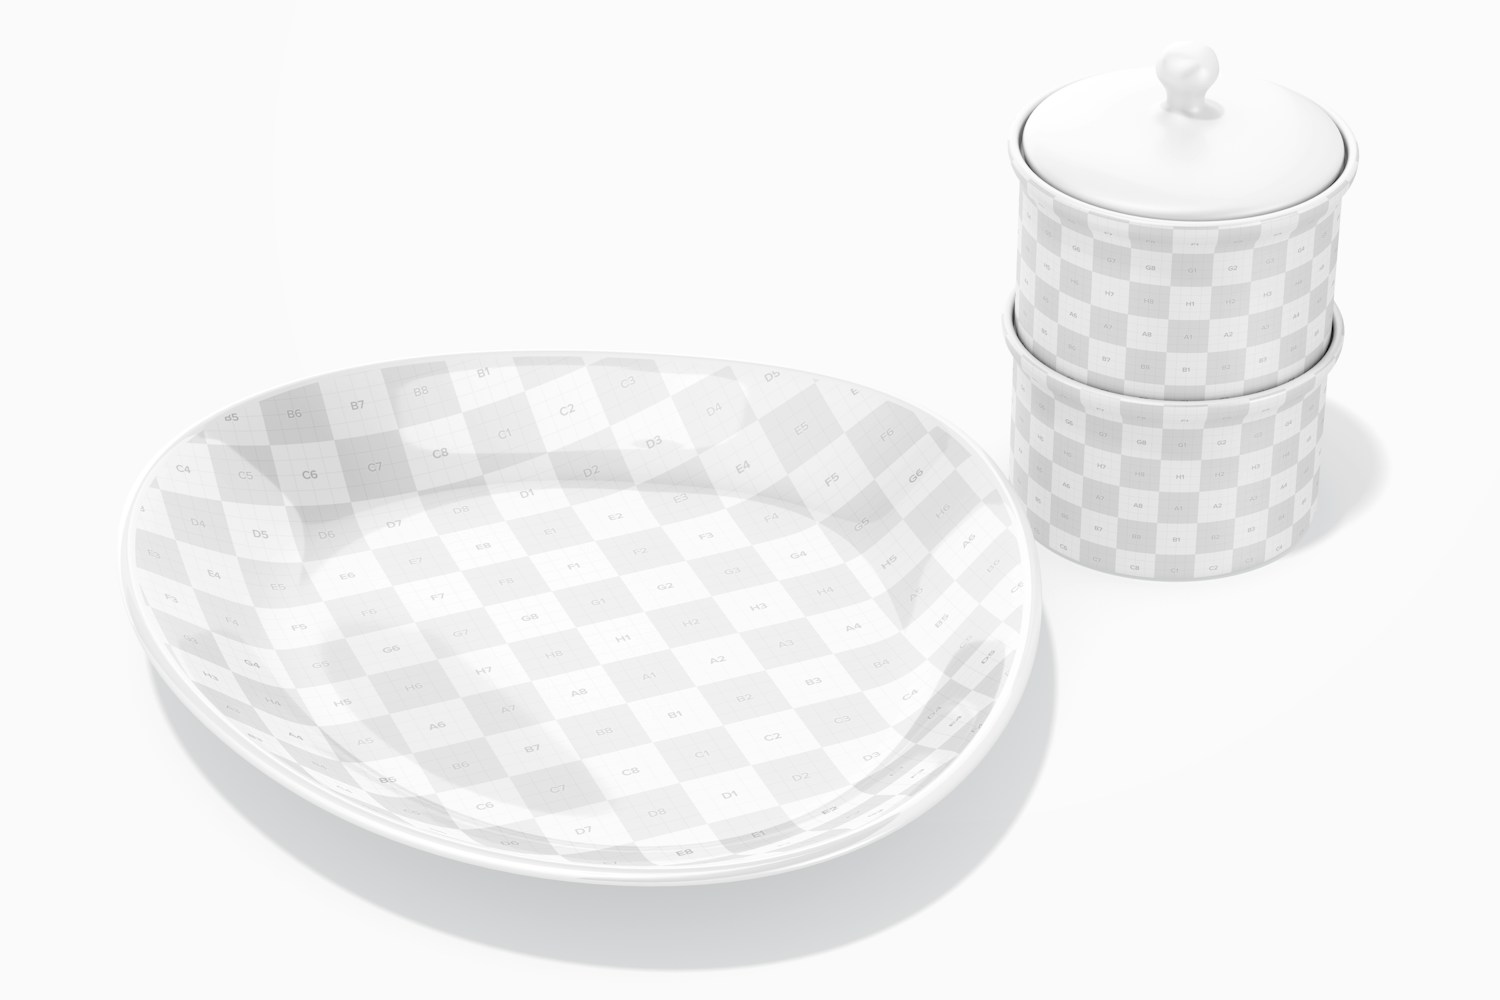 Ceramic Luxury Plate Mockup, with Salt Jar